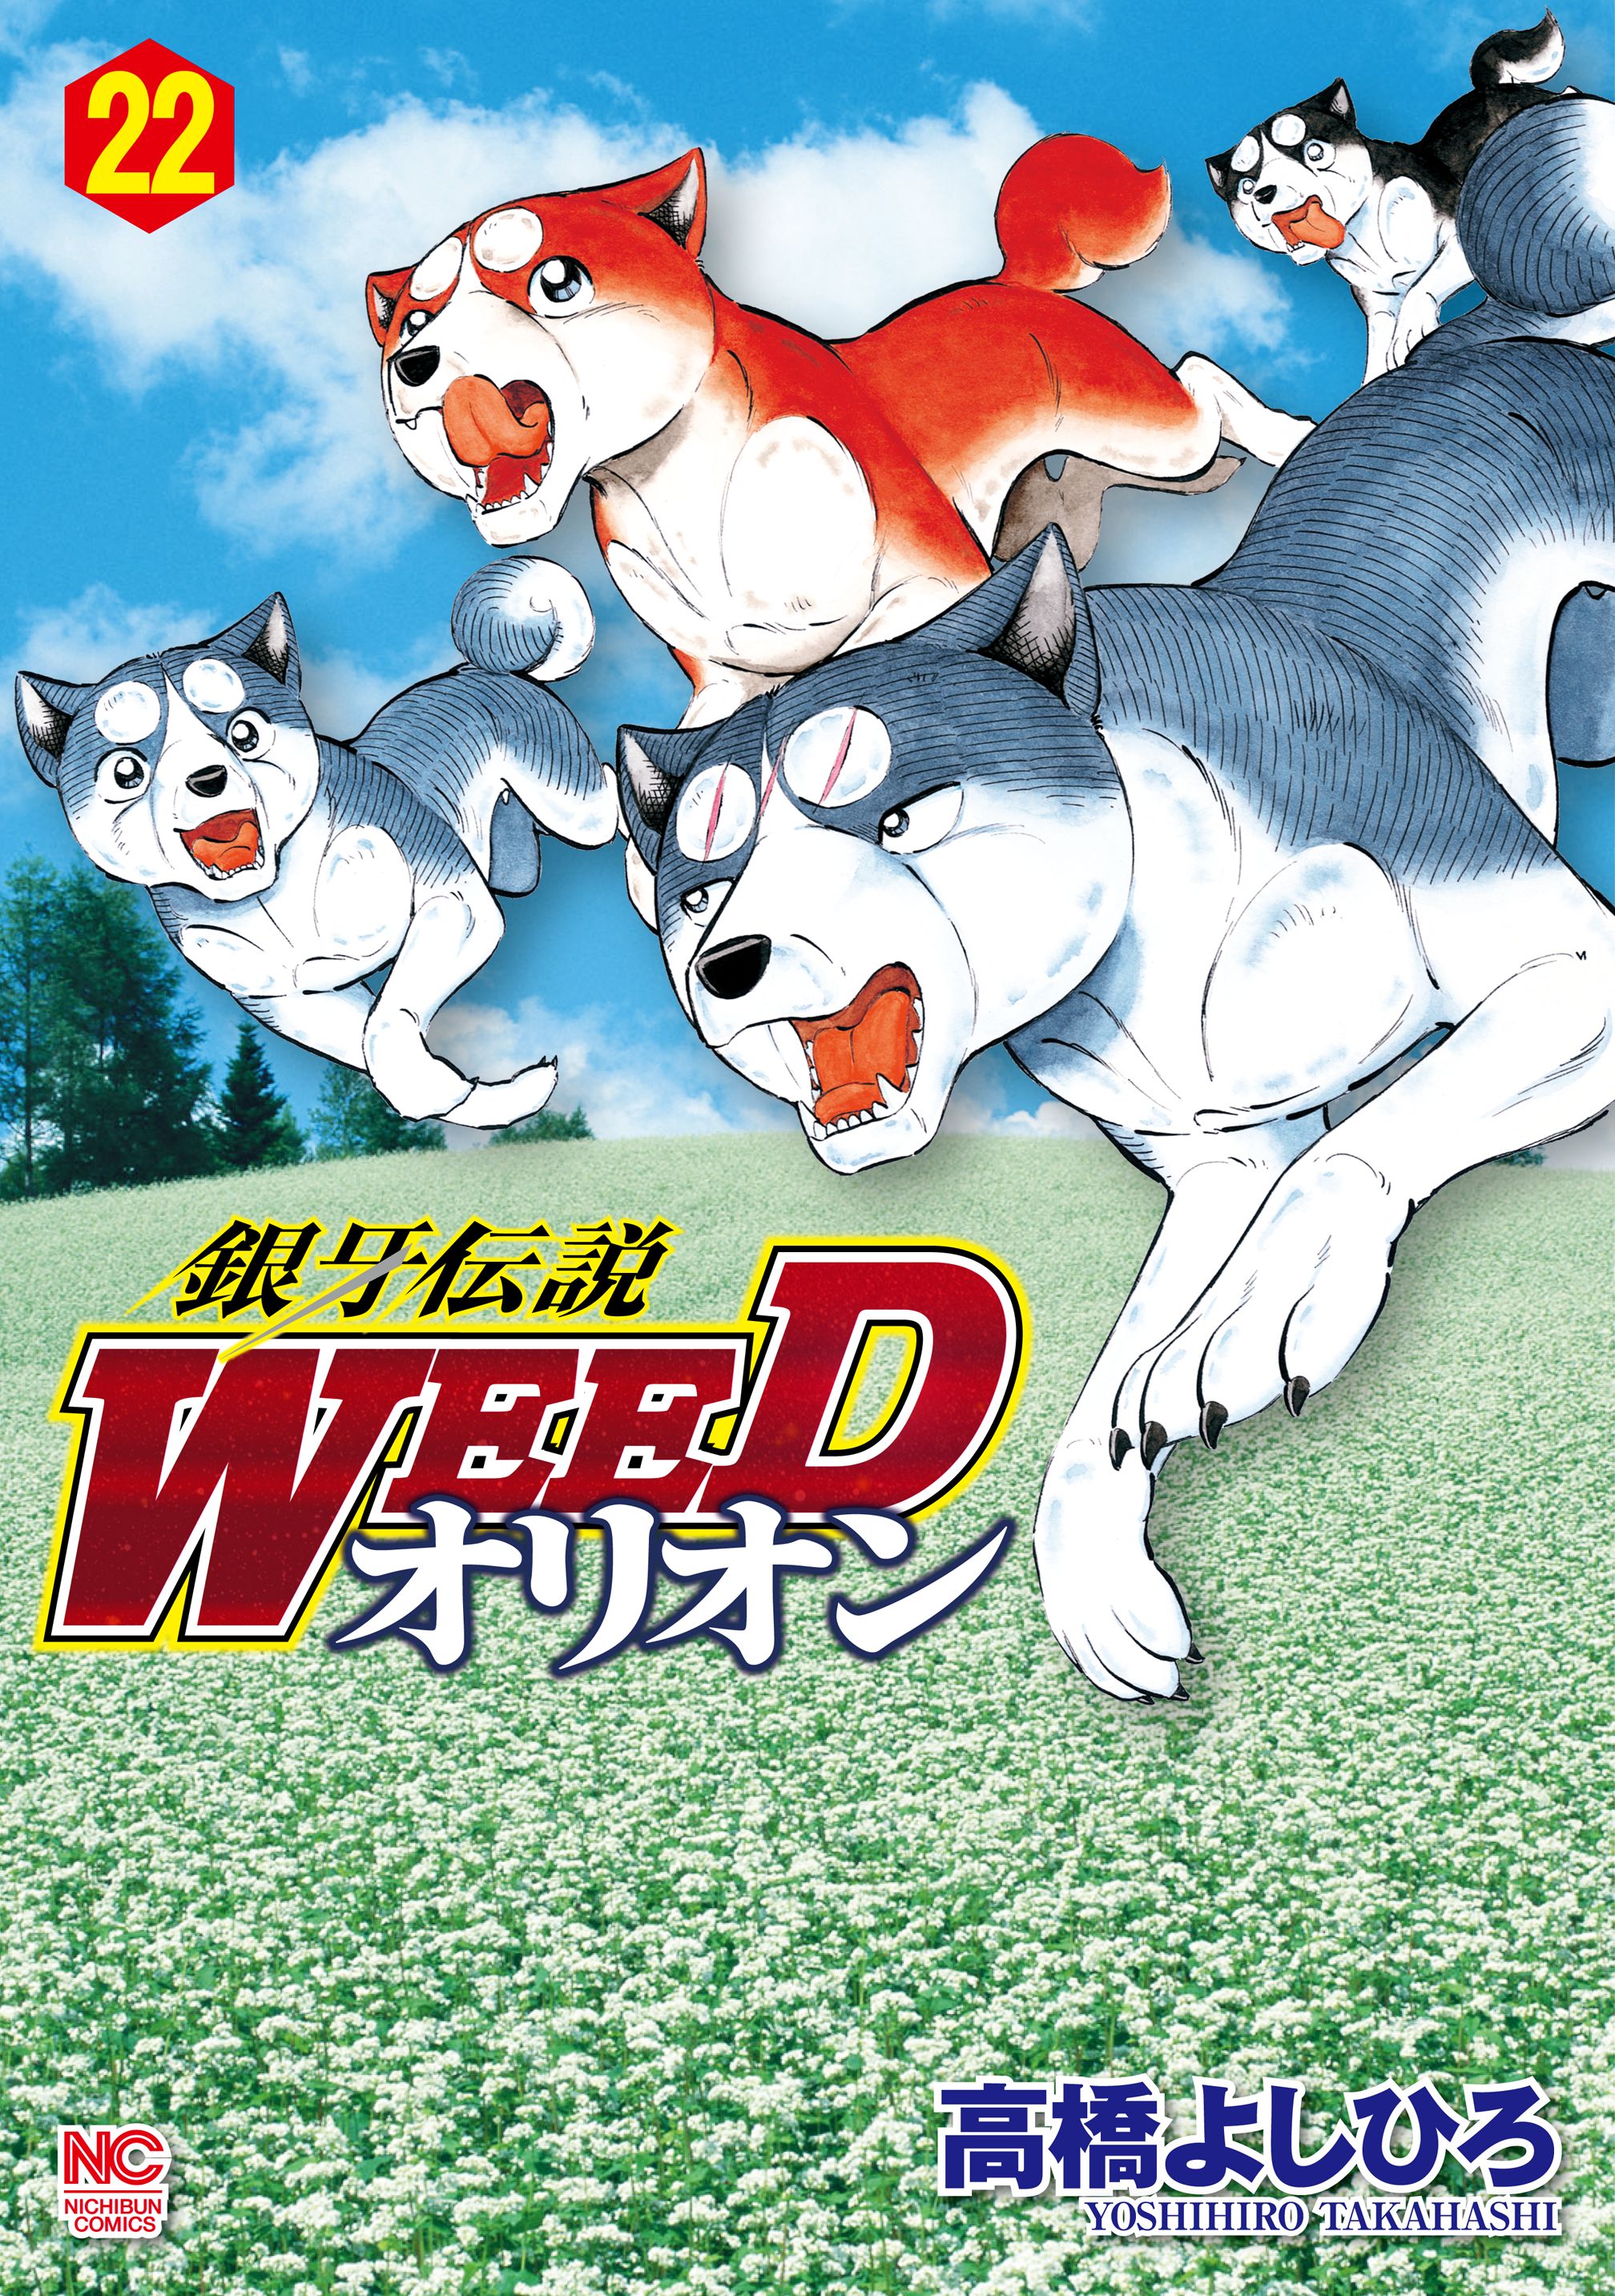 銀牙伝説WEED  WEEDオリオン　THE LAST WARS  ドッグデイズ本・雑誌・漫画